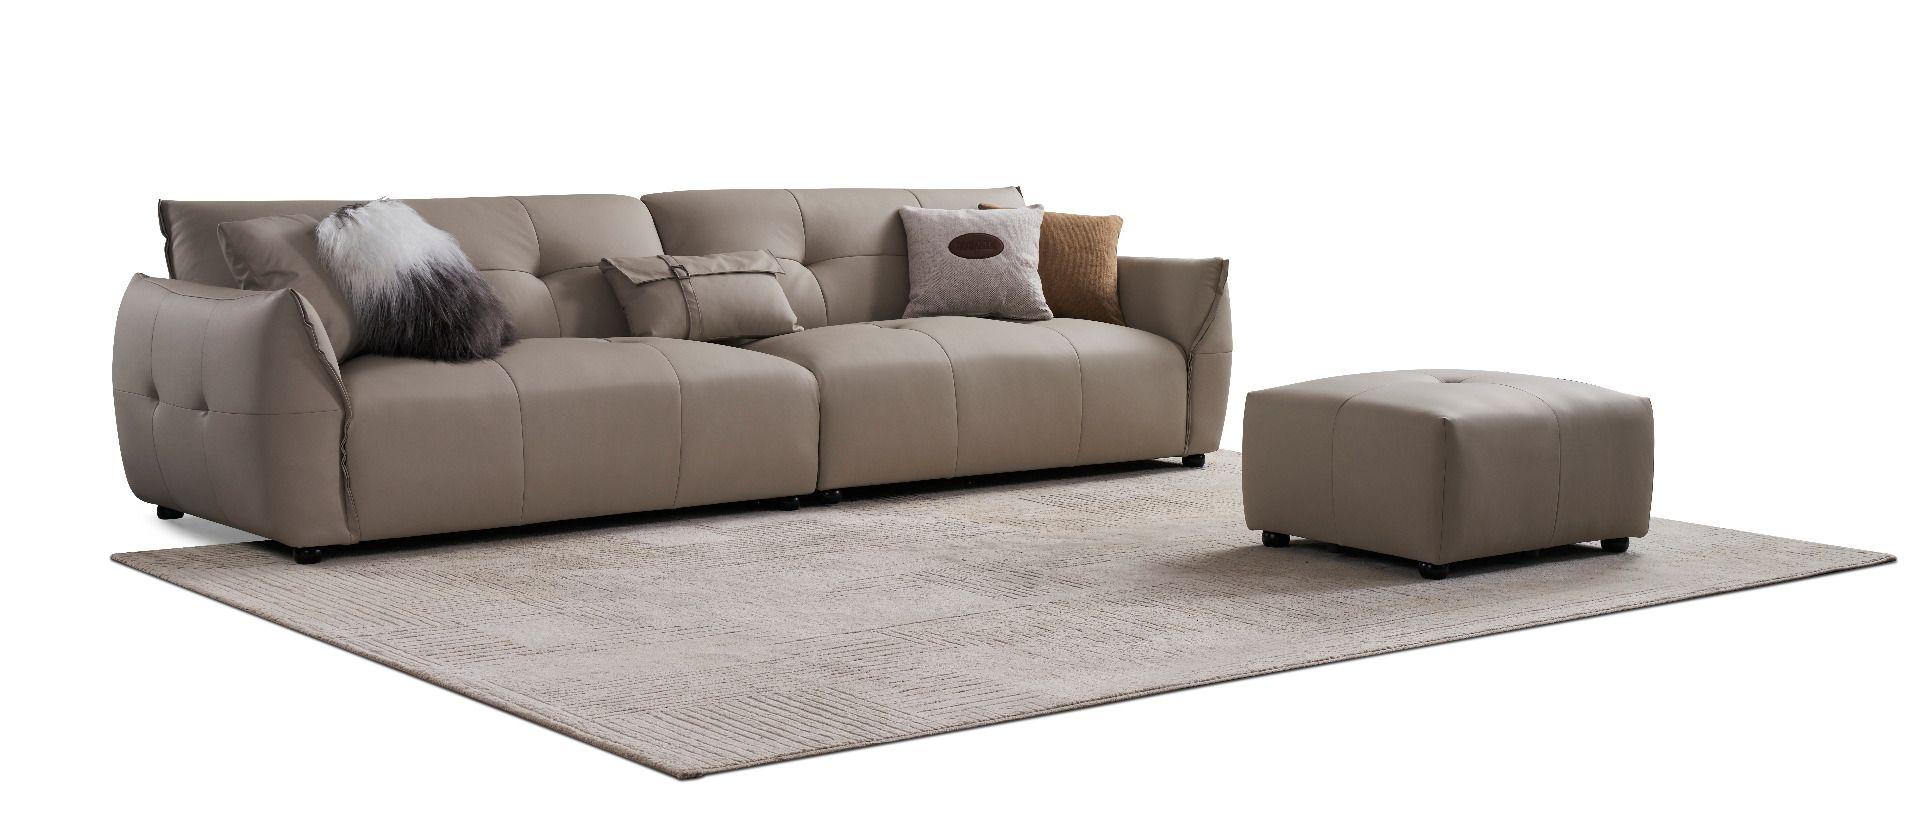 Contemporary Extra Long Sofa EK-D837-LG-SET EK-D837-LG-SET in Tan Fabric